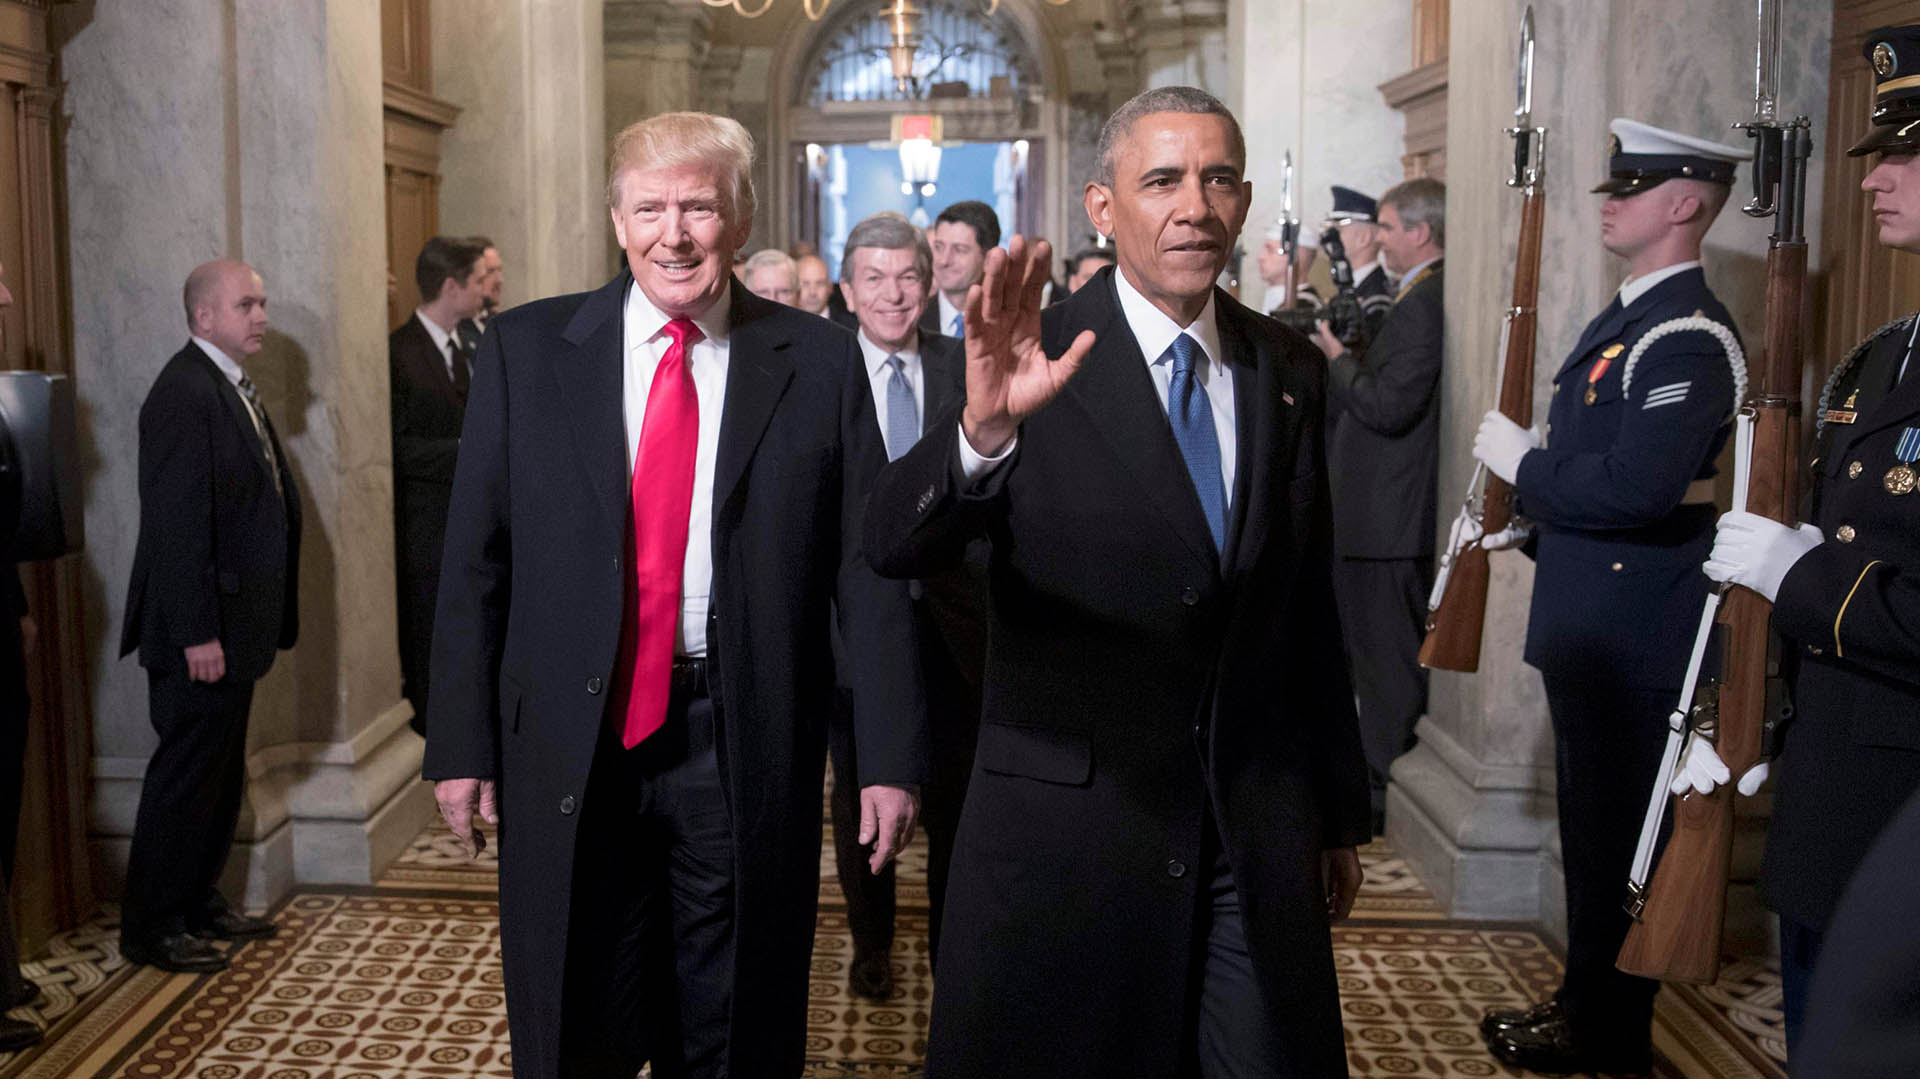 El presidente electo Donald Trump, a la izquierda, y el presidente Barack Obama llegan a la ceremonia de inauguración de Trump el 20 de enero de 2017 (REUTERS/J. Scott Applewhite/Pool)